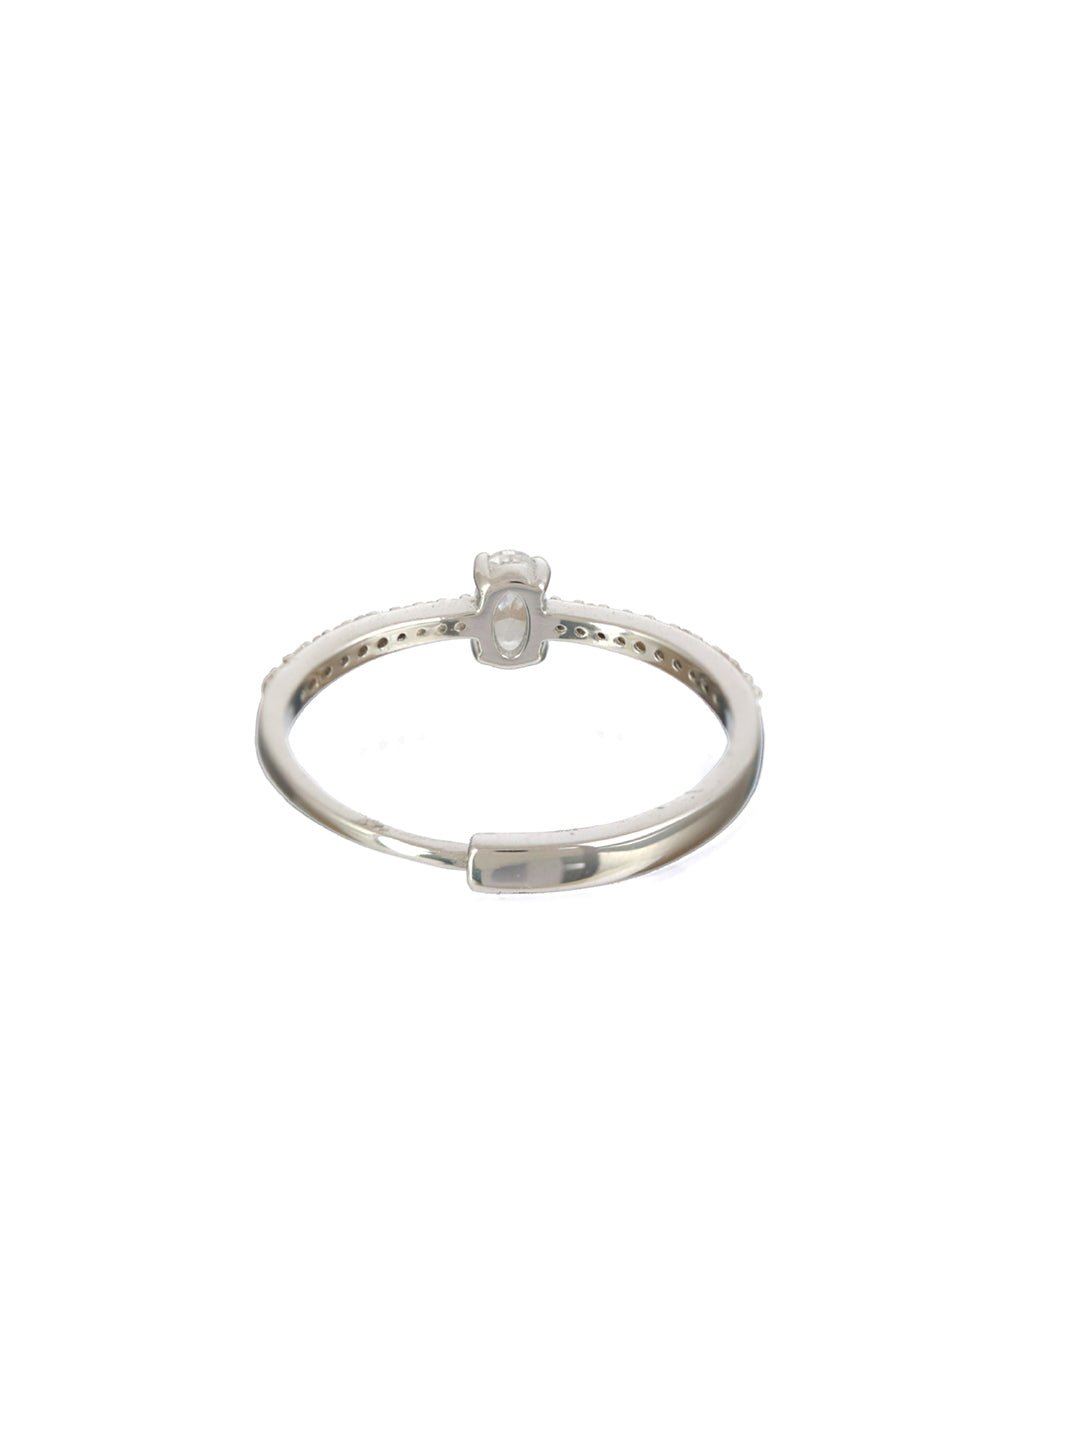 Sheer by Priyaasi Minimal Solitaire Sterling Silver Ring